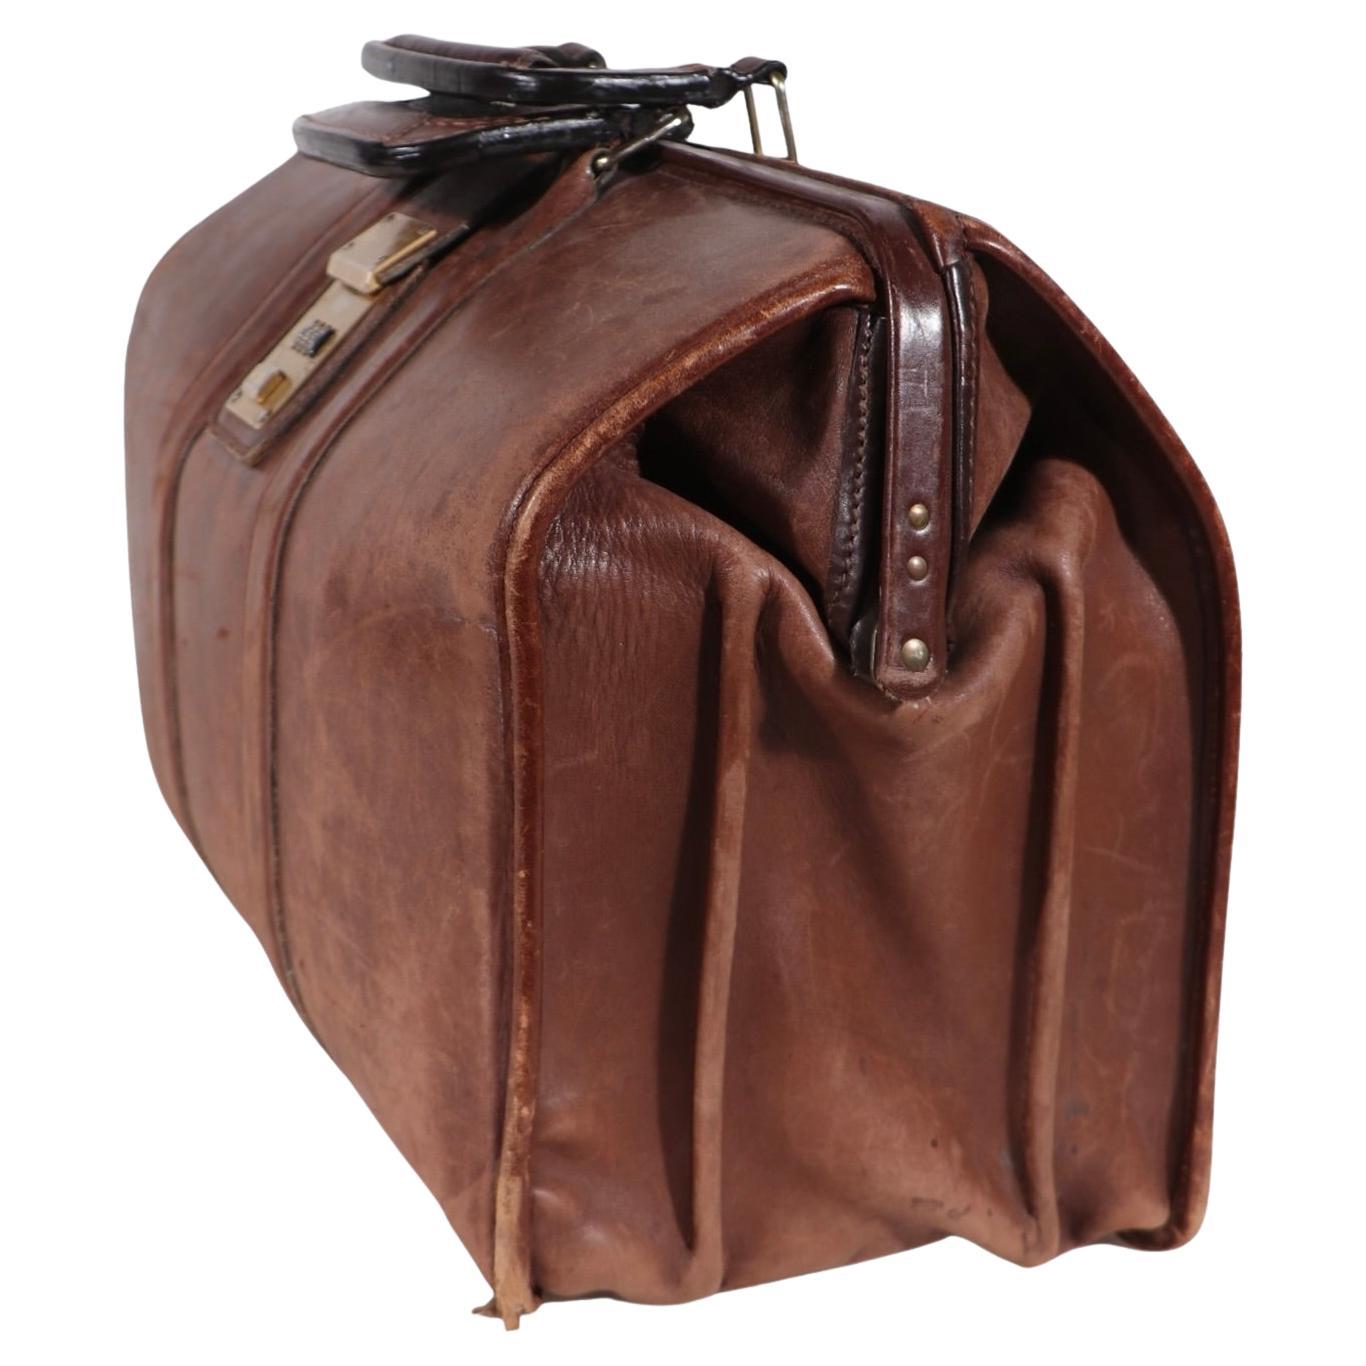 Vintage Leather Luggage  Valise Suitcase Handbag 